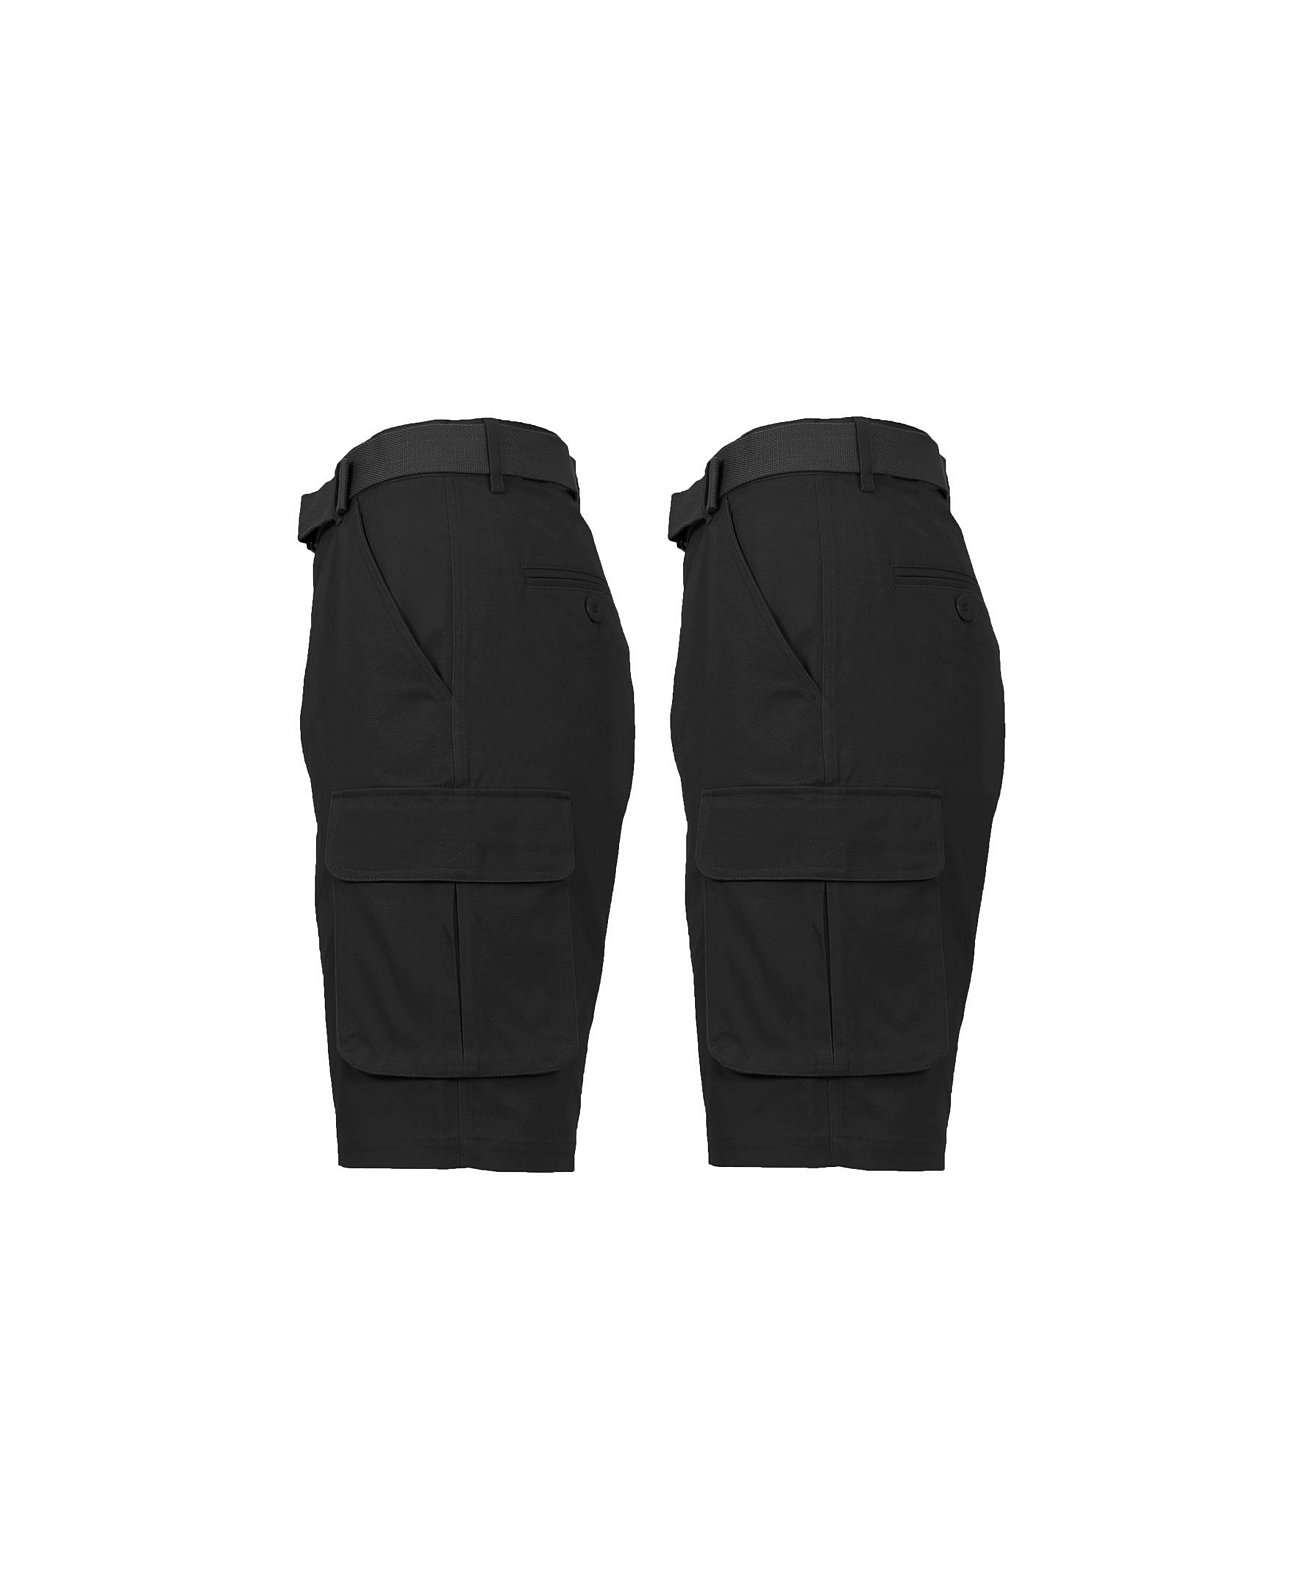 Мужские хлопковые шорты-карго с плоской передней частью и поясом, 2 шт. В упаковке Galaxy By Harvic